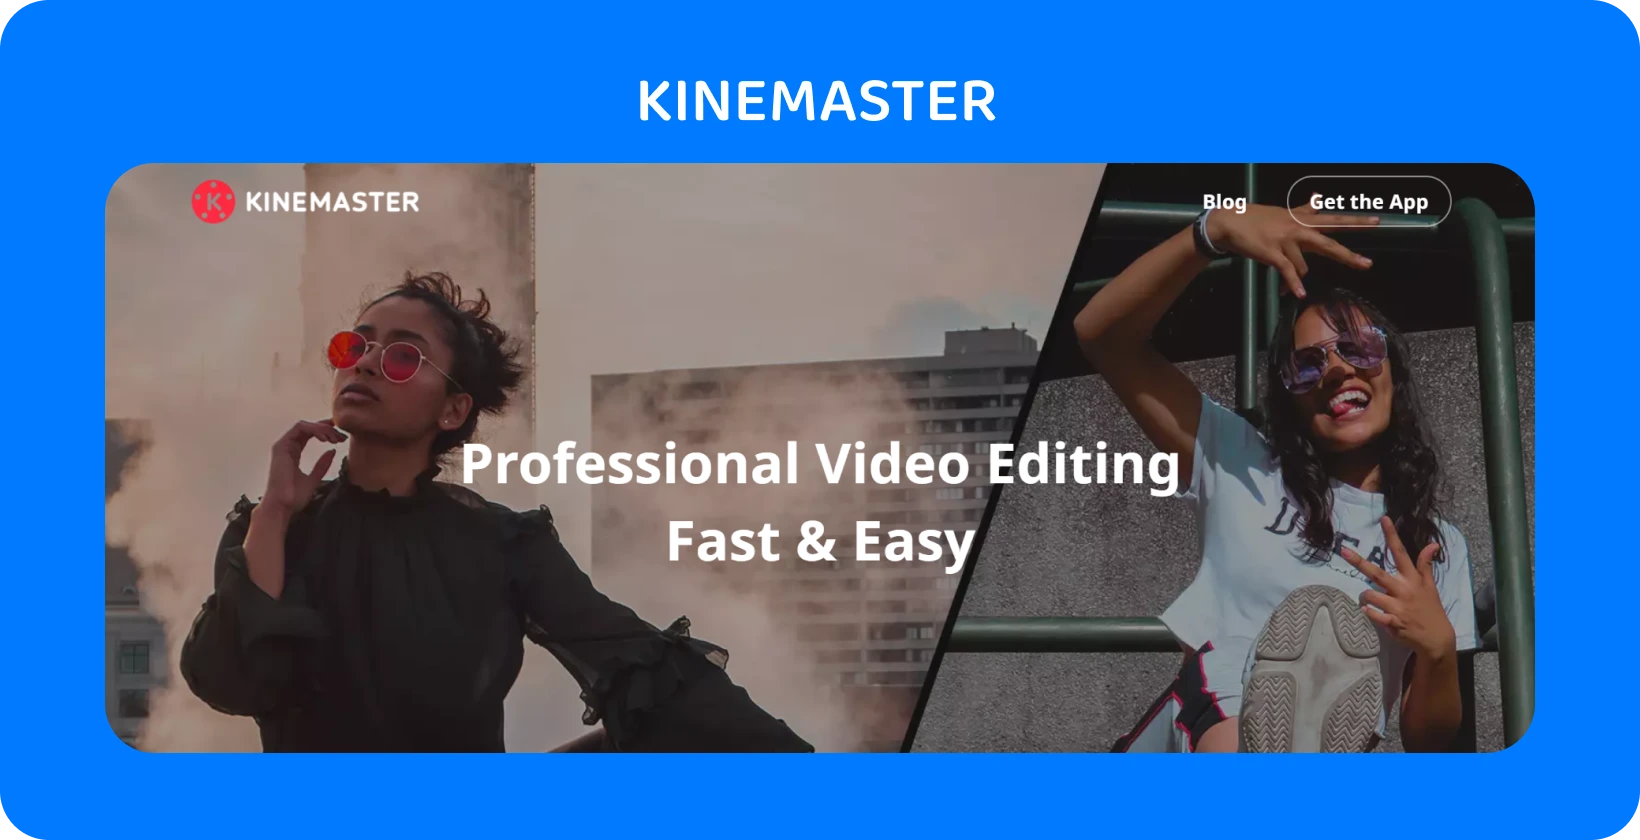 KineMaster reklama aplikacije s dva modela koji poziraju, ističući profesionalno uređivanje videozapisa koje je brzo i jednostavno.